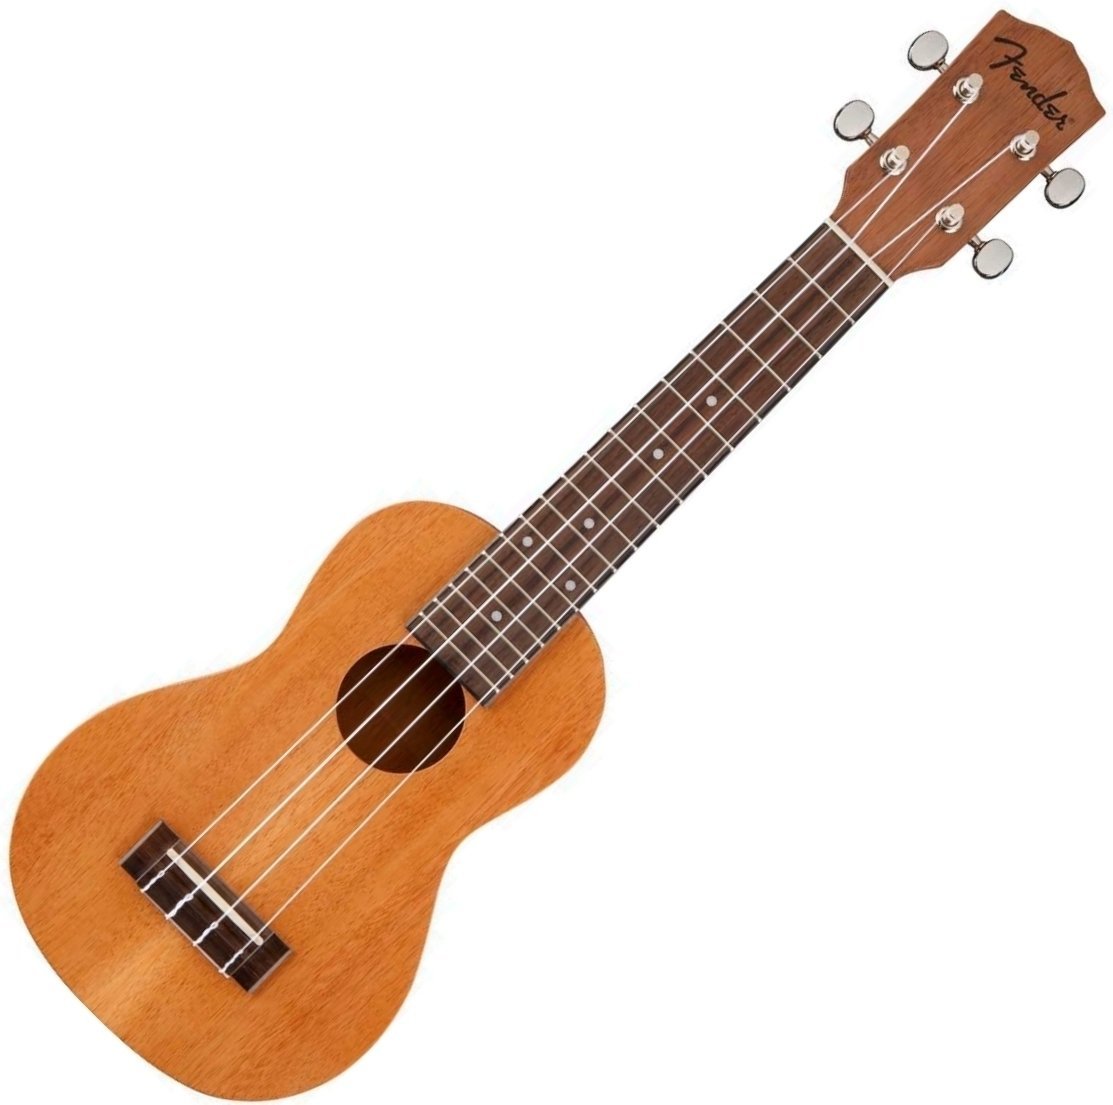 Szoprán ukulele Fender Piha'ea Soprano Ukulele Natural